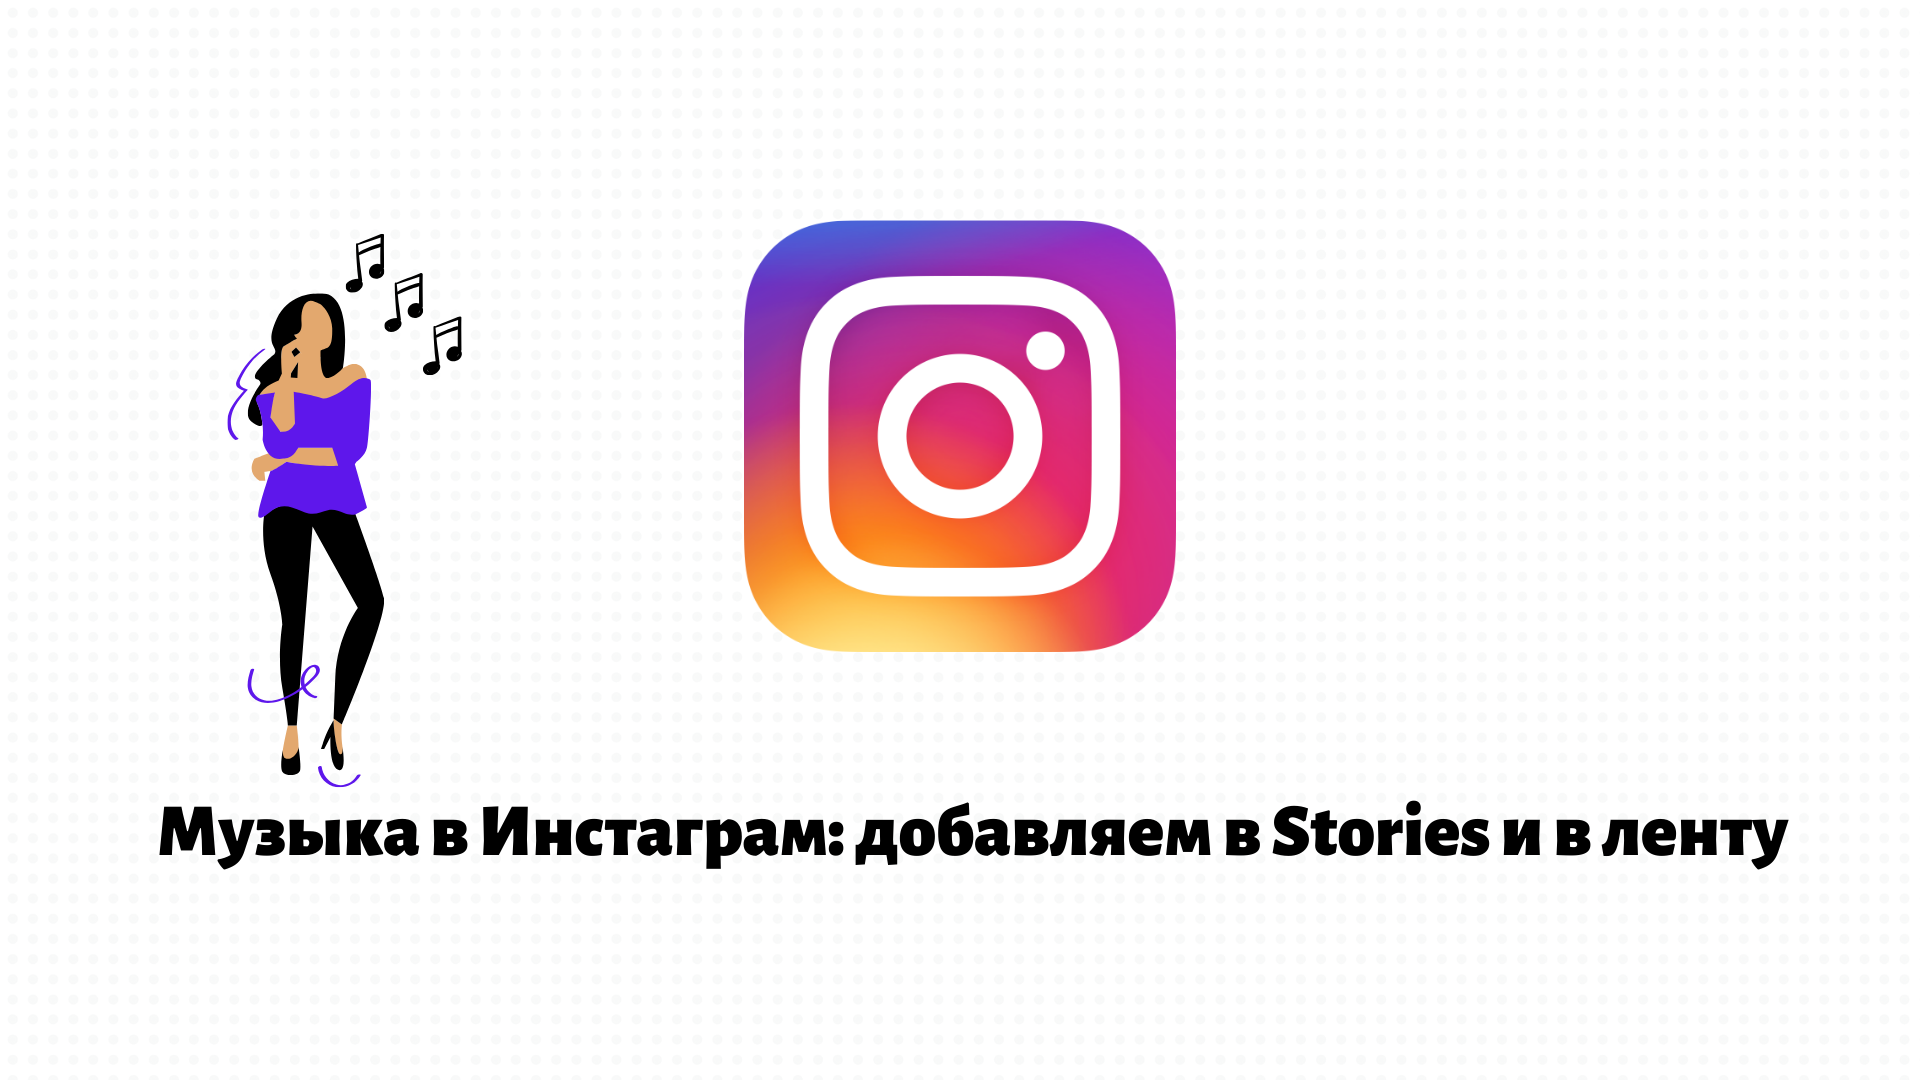 Музыка в Инстаграм: добавляем в Stories и в ленту